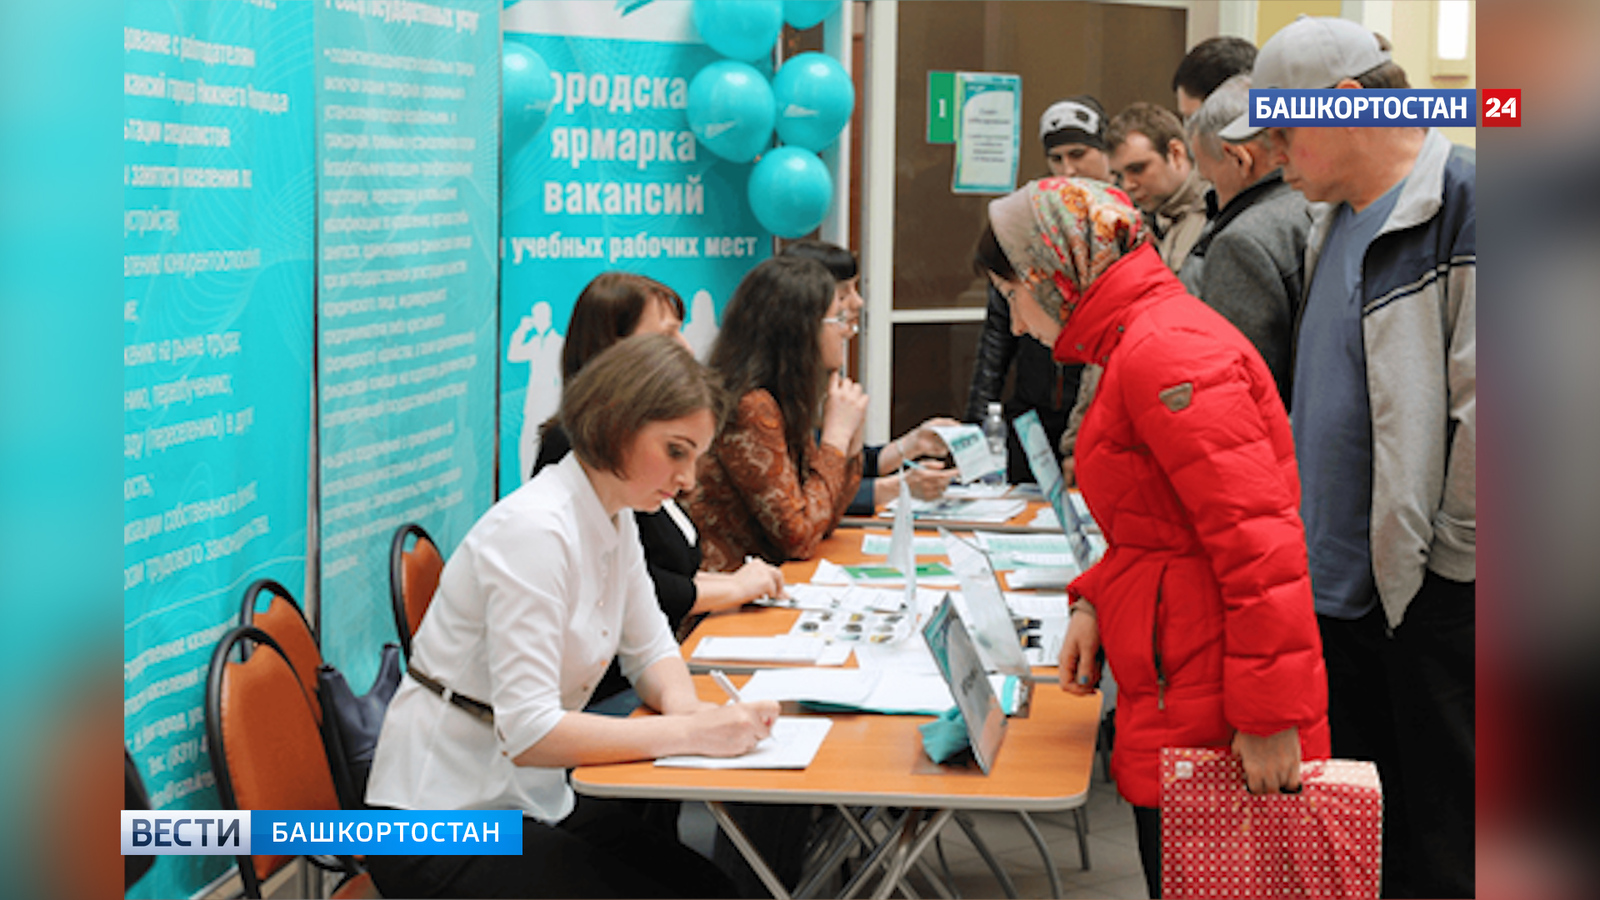 Количество безработных в Башкирии упало в 4 раза по сравнению с пандемическим периодом 2020 года